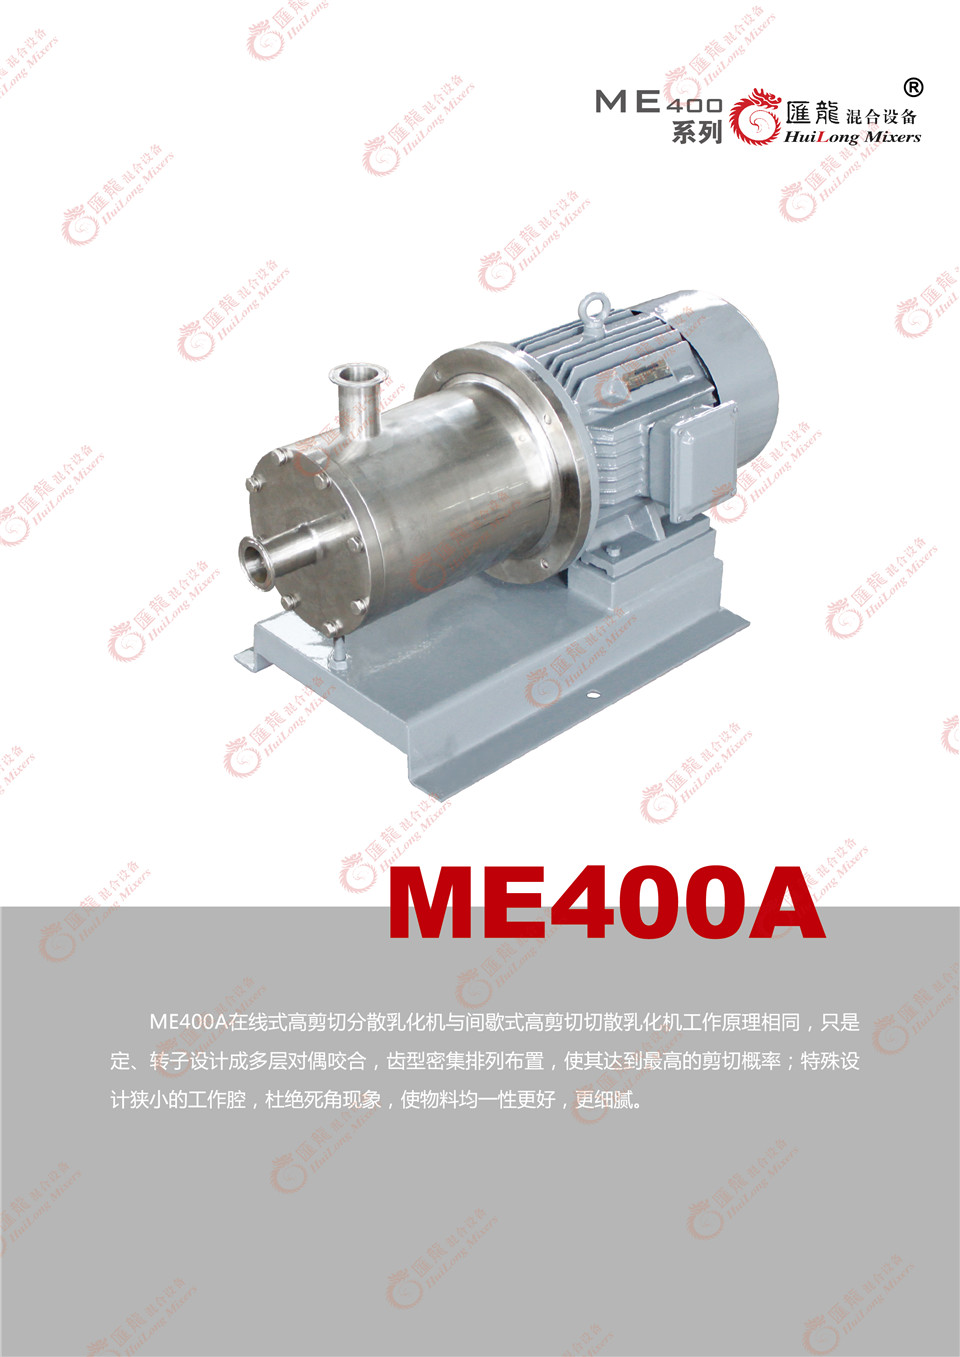 “ME400C-3型乳化机”/